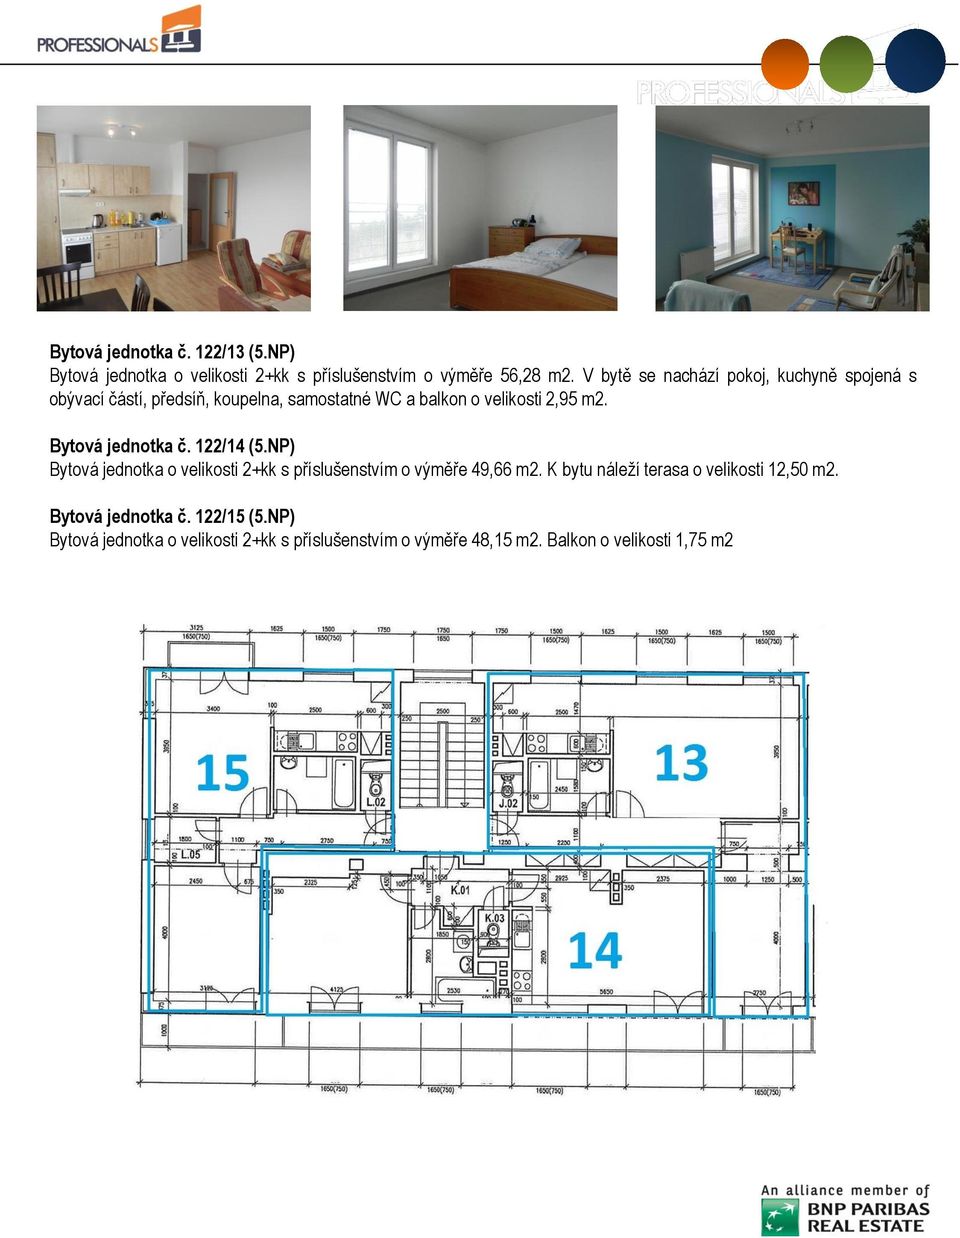 Bytová jednotka č. 122/14 (5.NP) Bytová jednotka o velikosti 2+kk s příslušenstvím o výměře 49,66 m2.